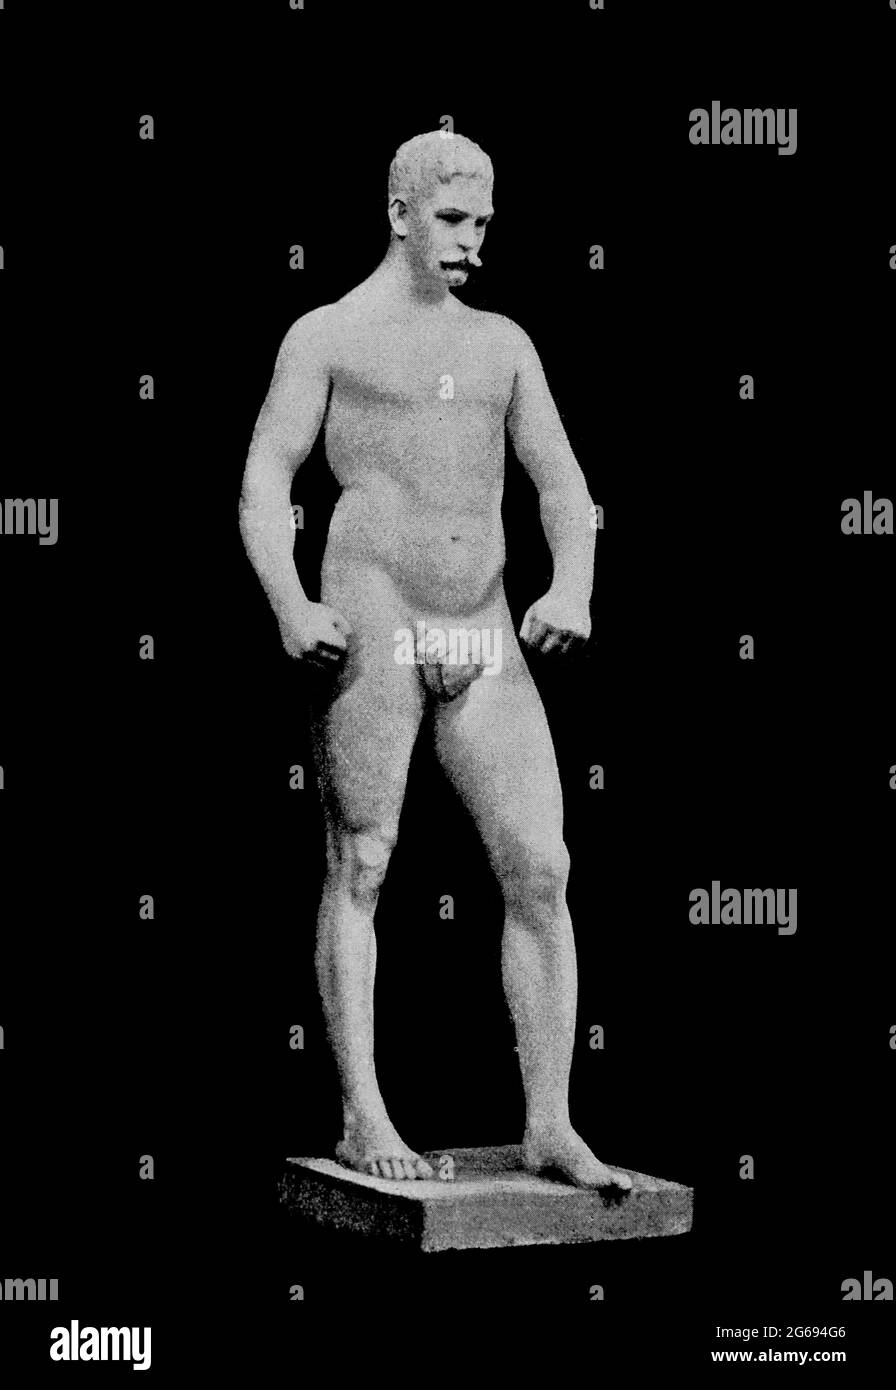 Der Boxer, der mit Erlaubnis von John Donoghue aus dem Buch „Leichtathletik und Männchensport“ von John Boyle O'Reilly, 1844-1890, veröffentlicht in Boston, vom Pilot Verlag im Jahr 1890, graviert wurde. FÜR DIEJENIGEN, DIE GLAUBEN, DASS EINE LIEBE FÜR UNSCHULDIGEN SPORT, SPIELERISCHE ÜBUNG. UND DIE FREUDE AN DER NATUR, IST EIN SEGEN, DER NICHT NUR FÜR DIE JAHRE DER KINDHEIT, SONDERN FÜR DAS GANZE LEBEN EINES MANNES BESTIMMT IST Stockfoto